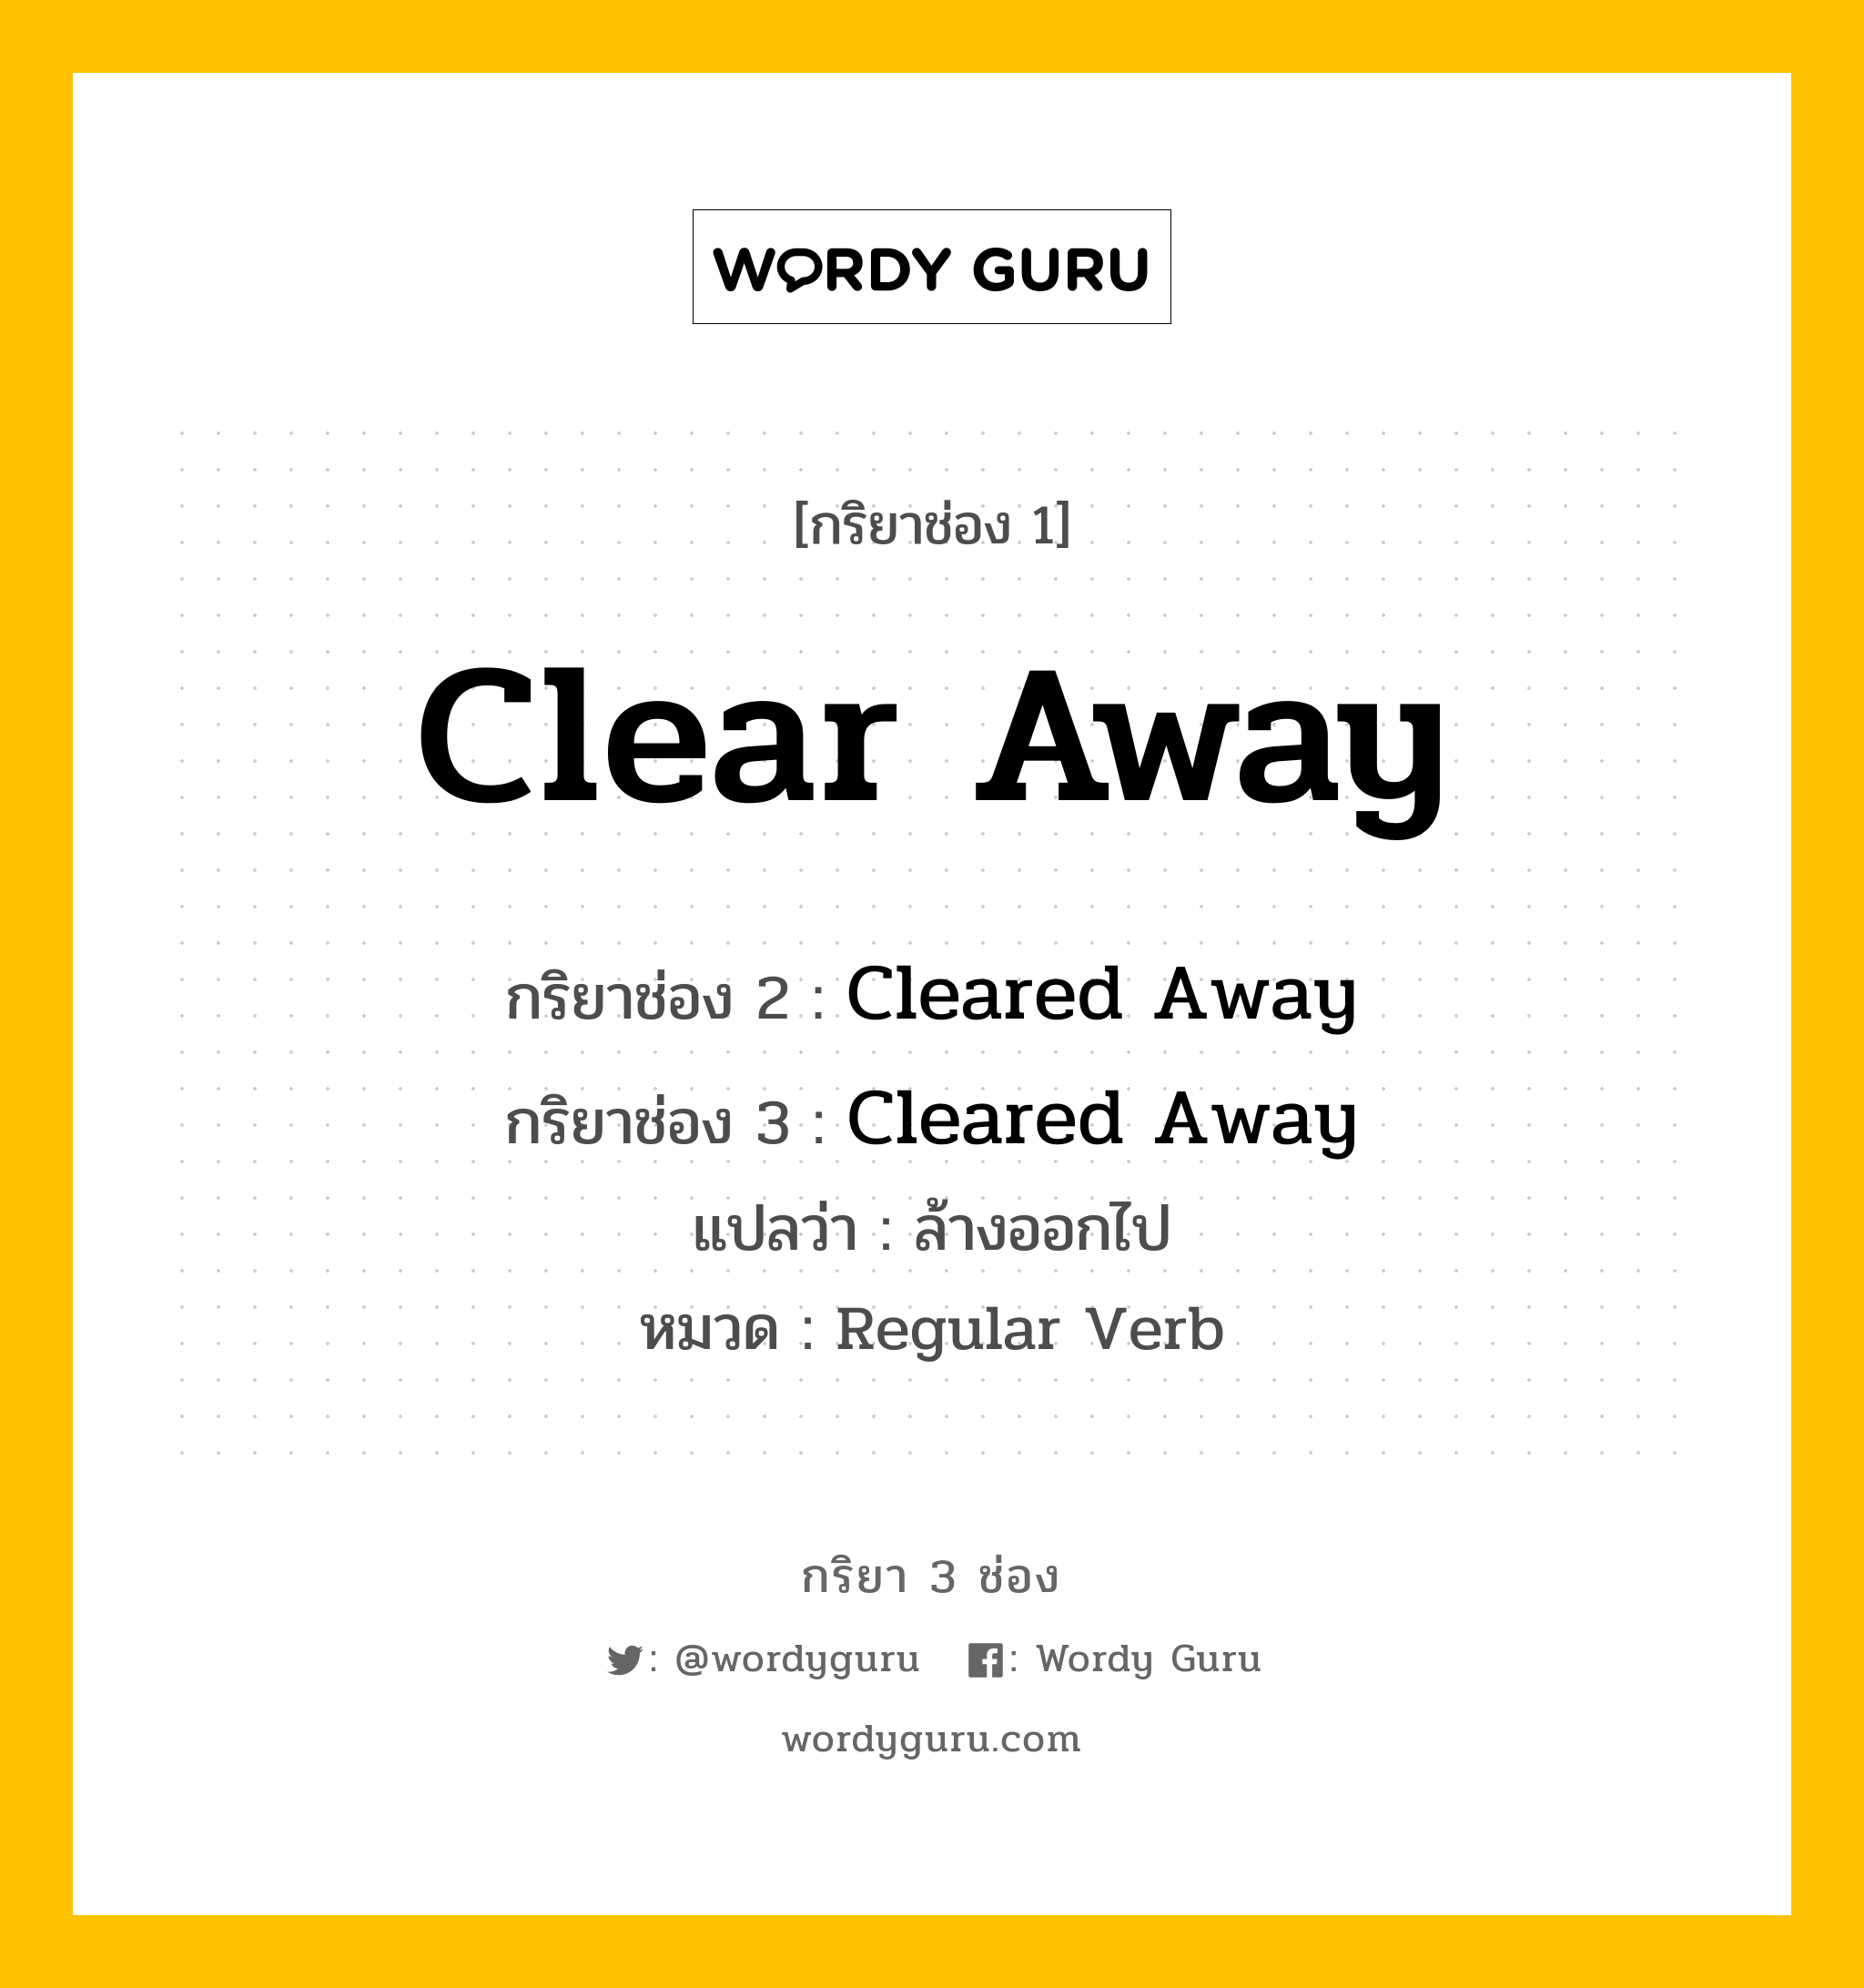 กริยา 3 ช่อง: Clear Away ช่อง 2 Clear Away ช่อง 3 คืออะไร, กริยาช่อง 1 Clear Away กริยาช่อง 2 Cleared Away กริยาช่อง 3 Cleared Away แปลว่า ล้างออกไป หมวด Regular Verb หมวด Regular Verb